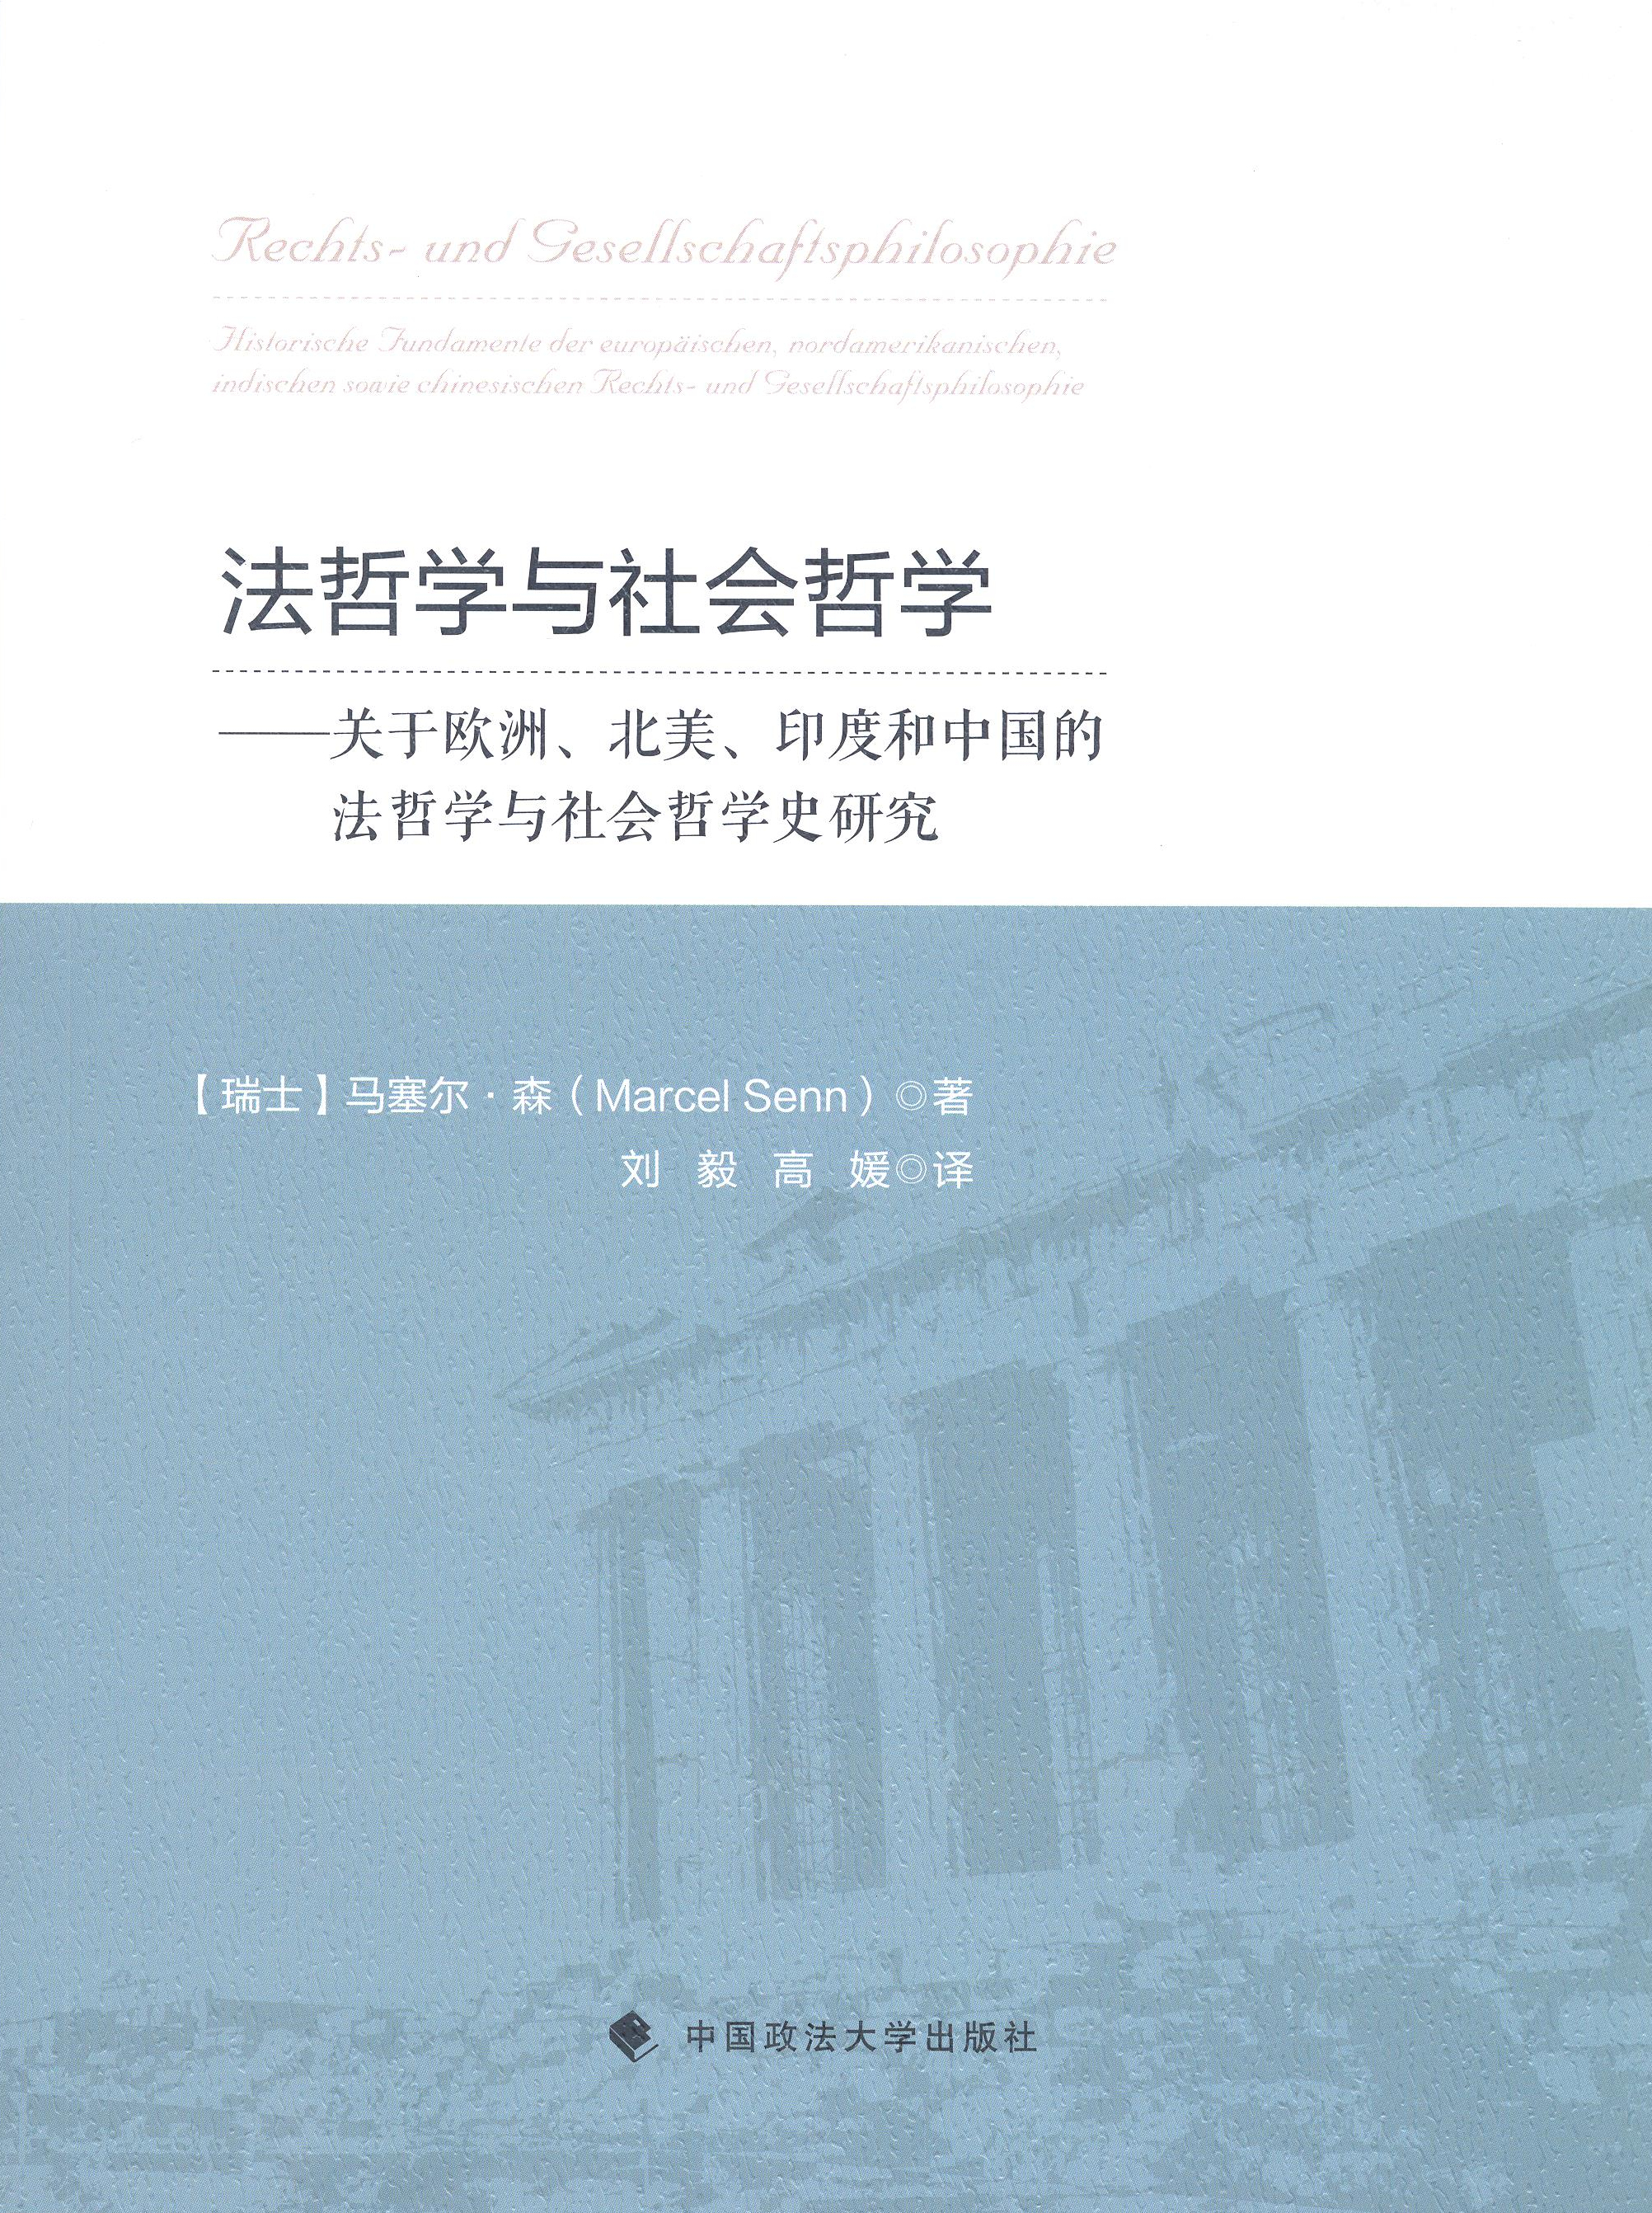 Rechts- und Gesellschaftsphilosophie (chinesische Übersetzung: Prof. Liu Yi)